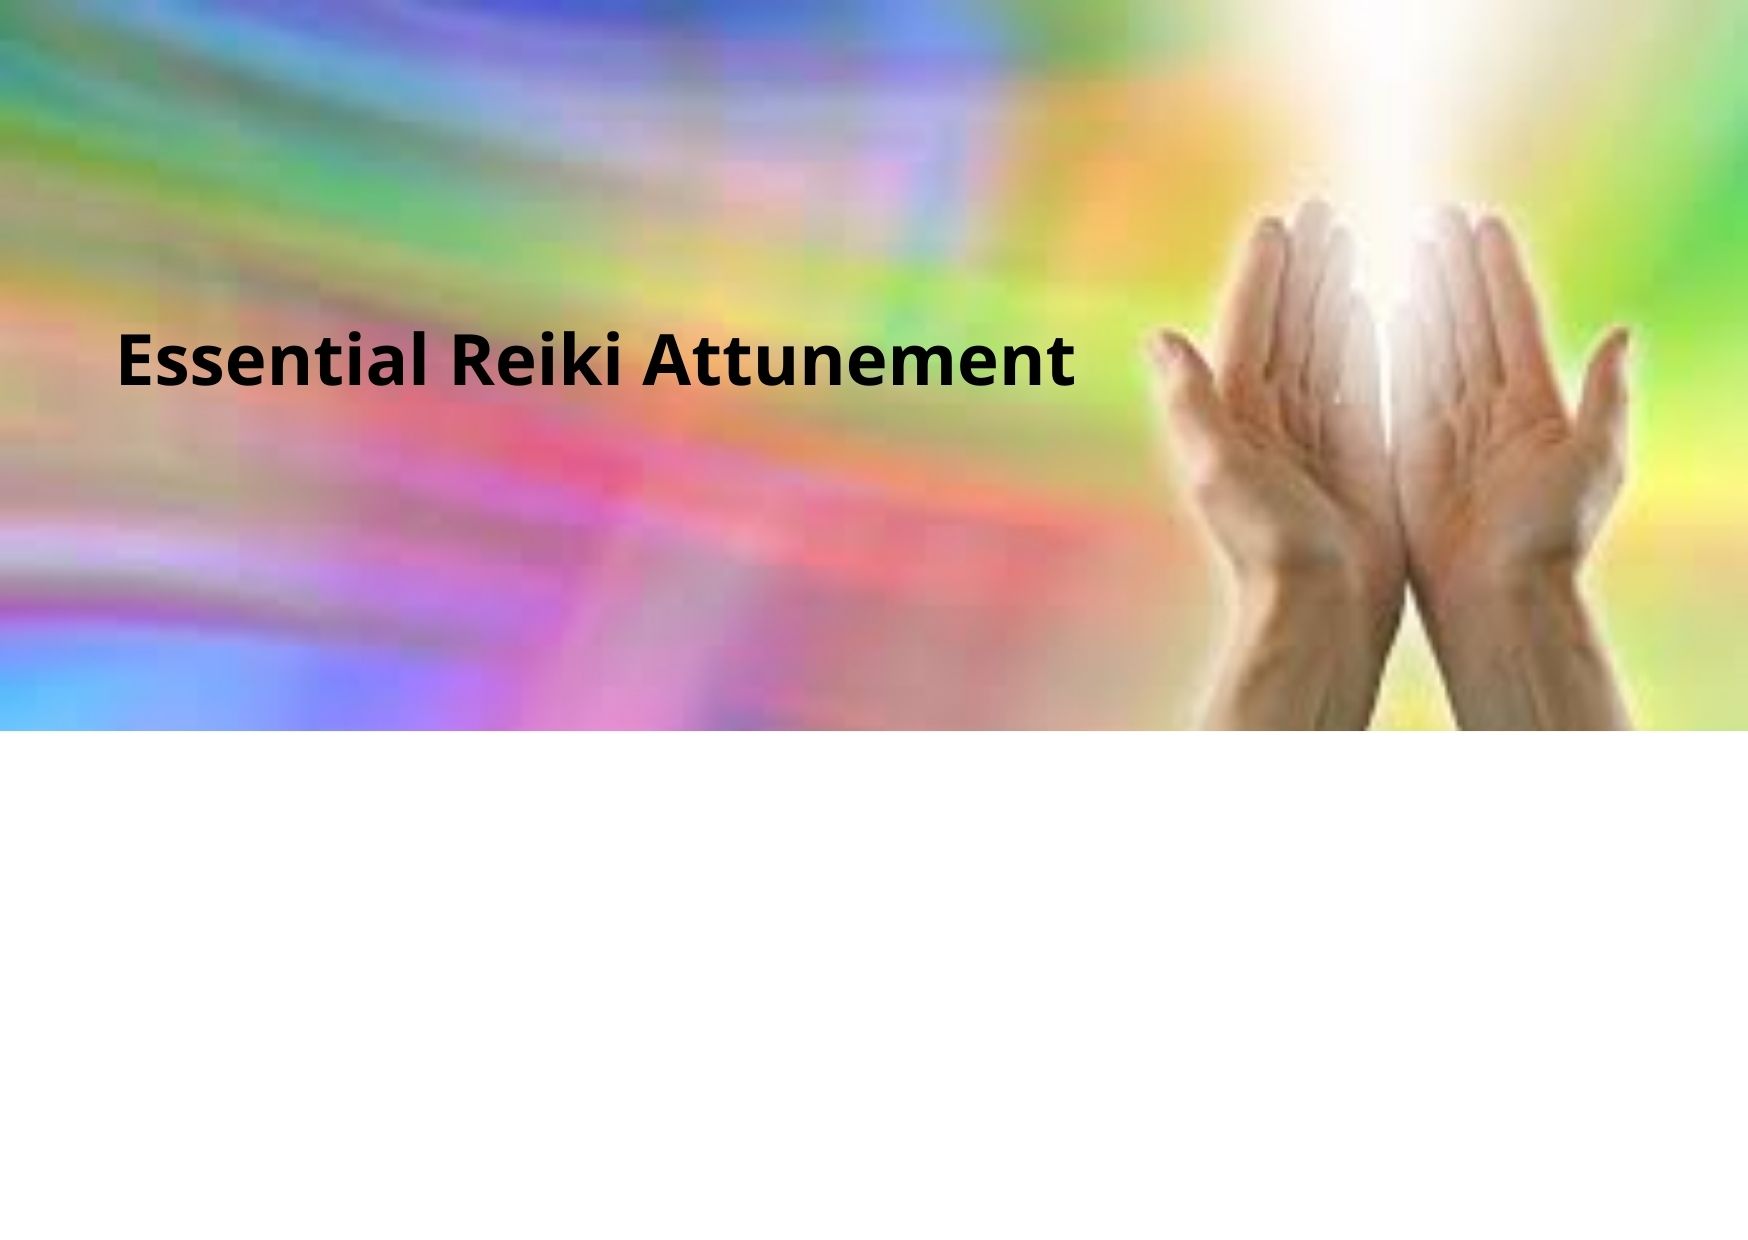 Essential Reiki Attunement